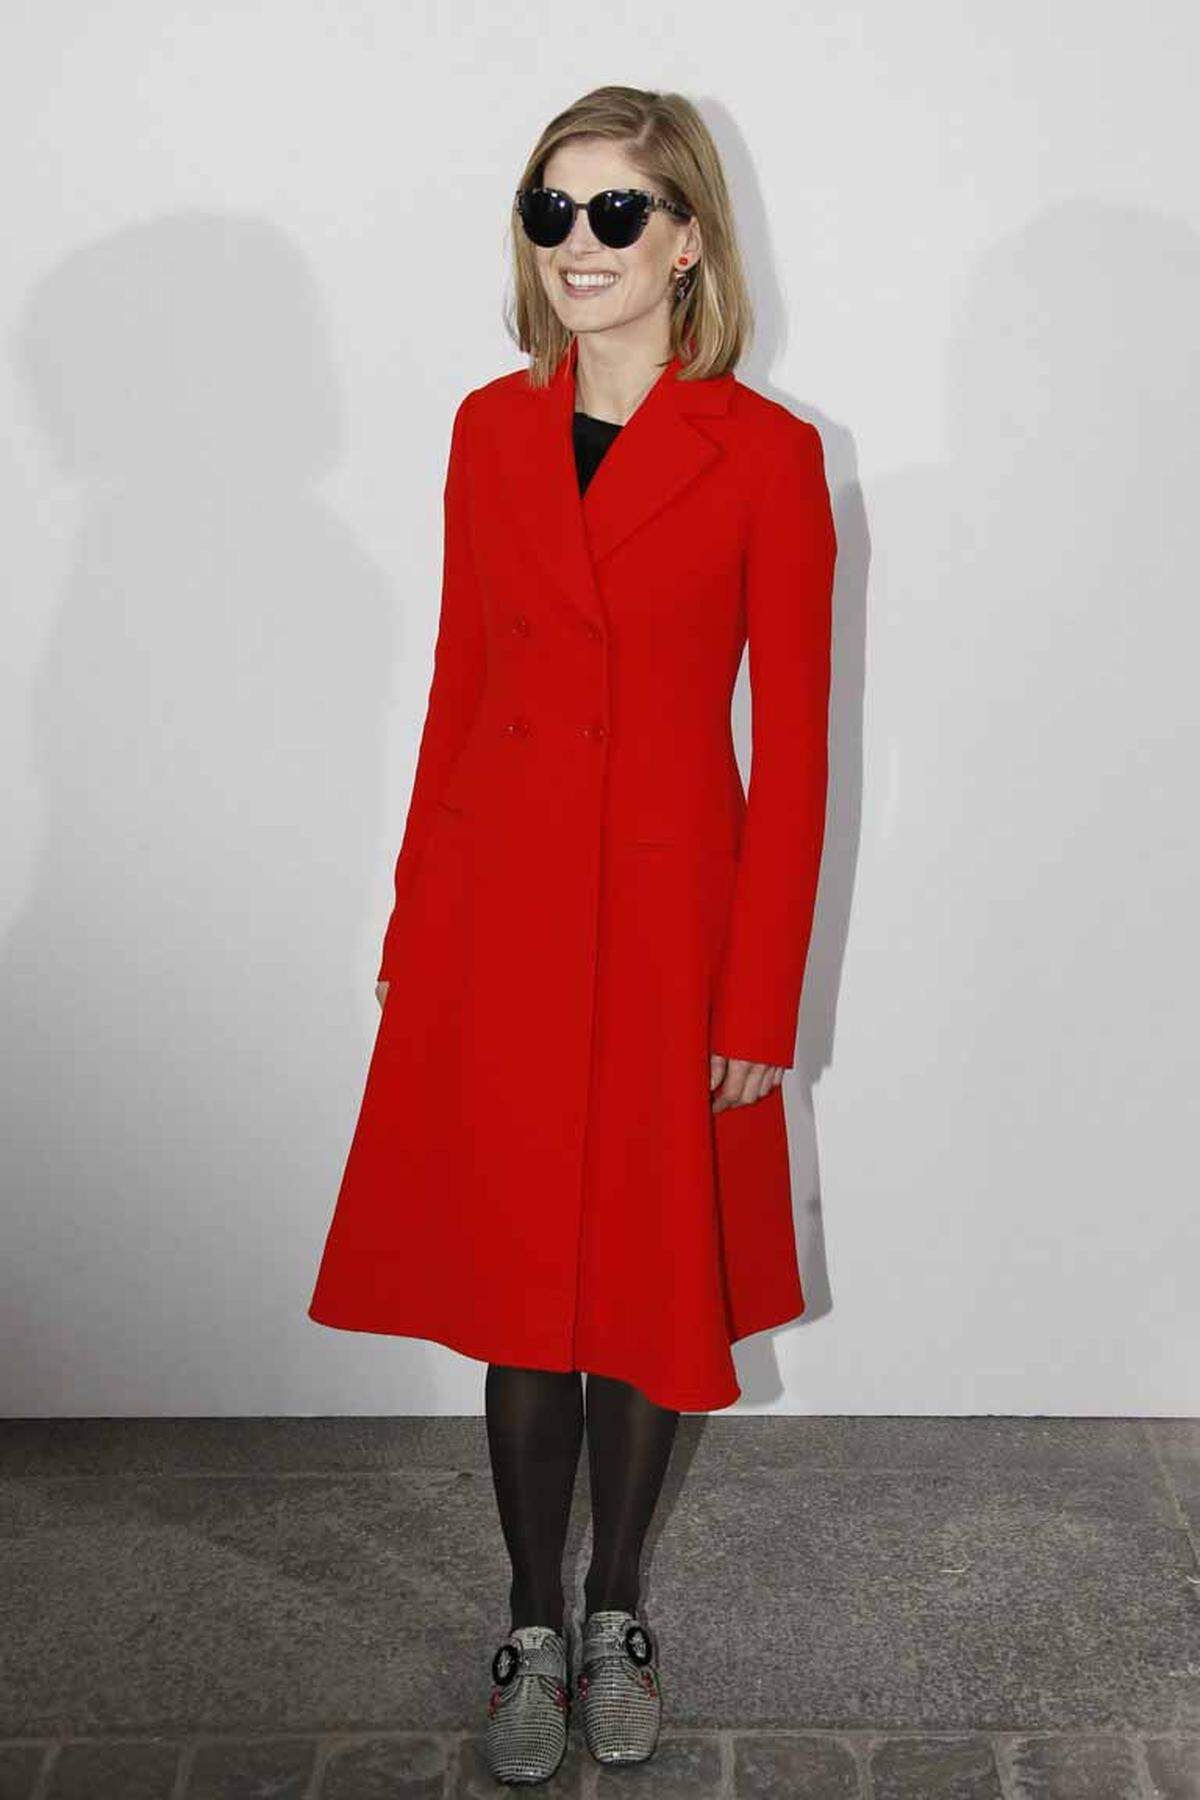 Rot ist anscheinend eine Trendfarbe für den Herbst und Winter. Kollegin Rosamund Pike gefiel sich in dem Dior-Mantel.